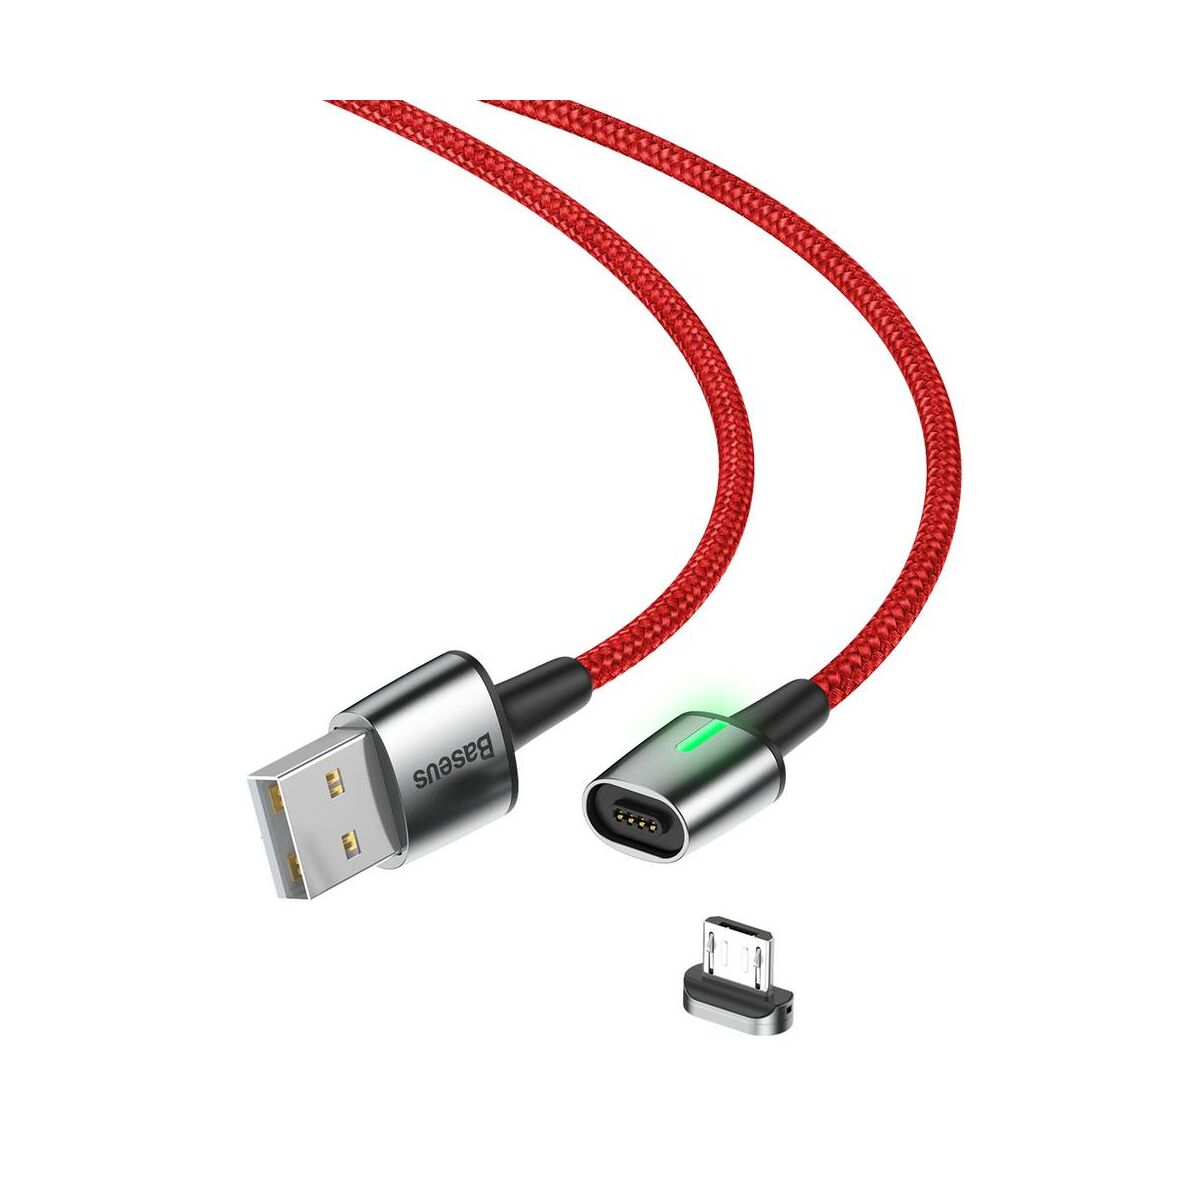 Baseus Mágneses kábel, Micro USB, Mágnessel csatlakozó töltő kábel, 1.5A 2m, piros (CAMXC-B09)